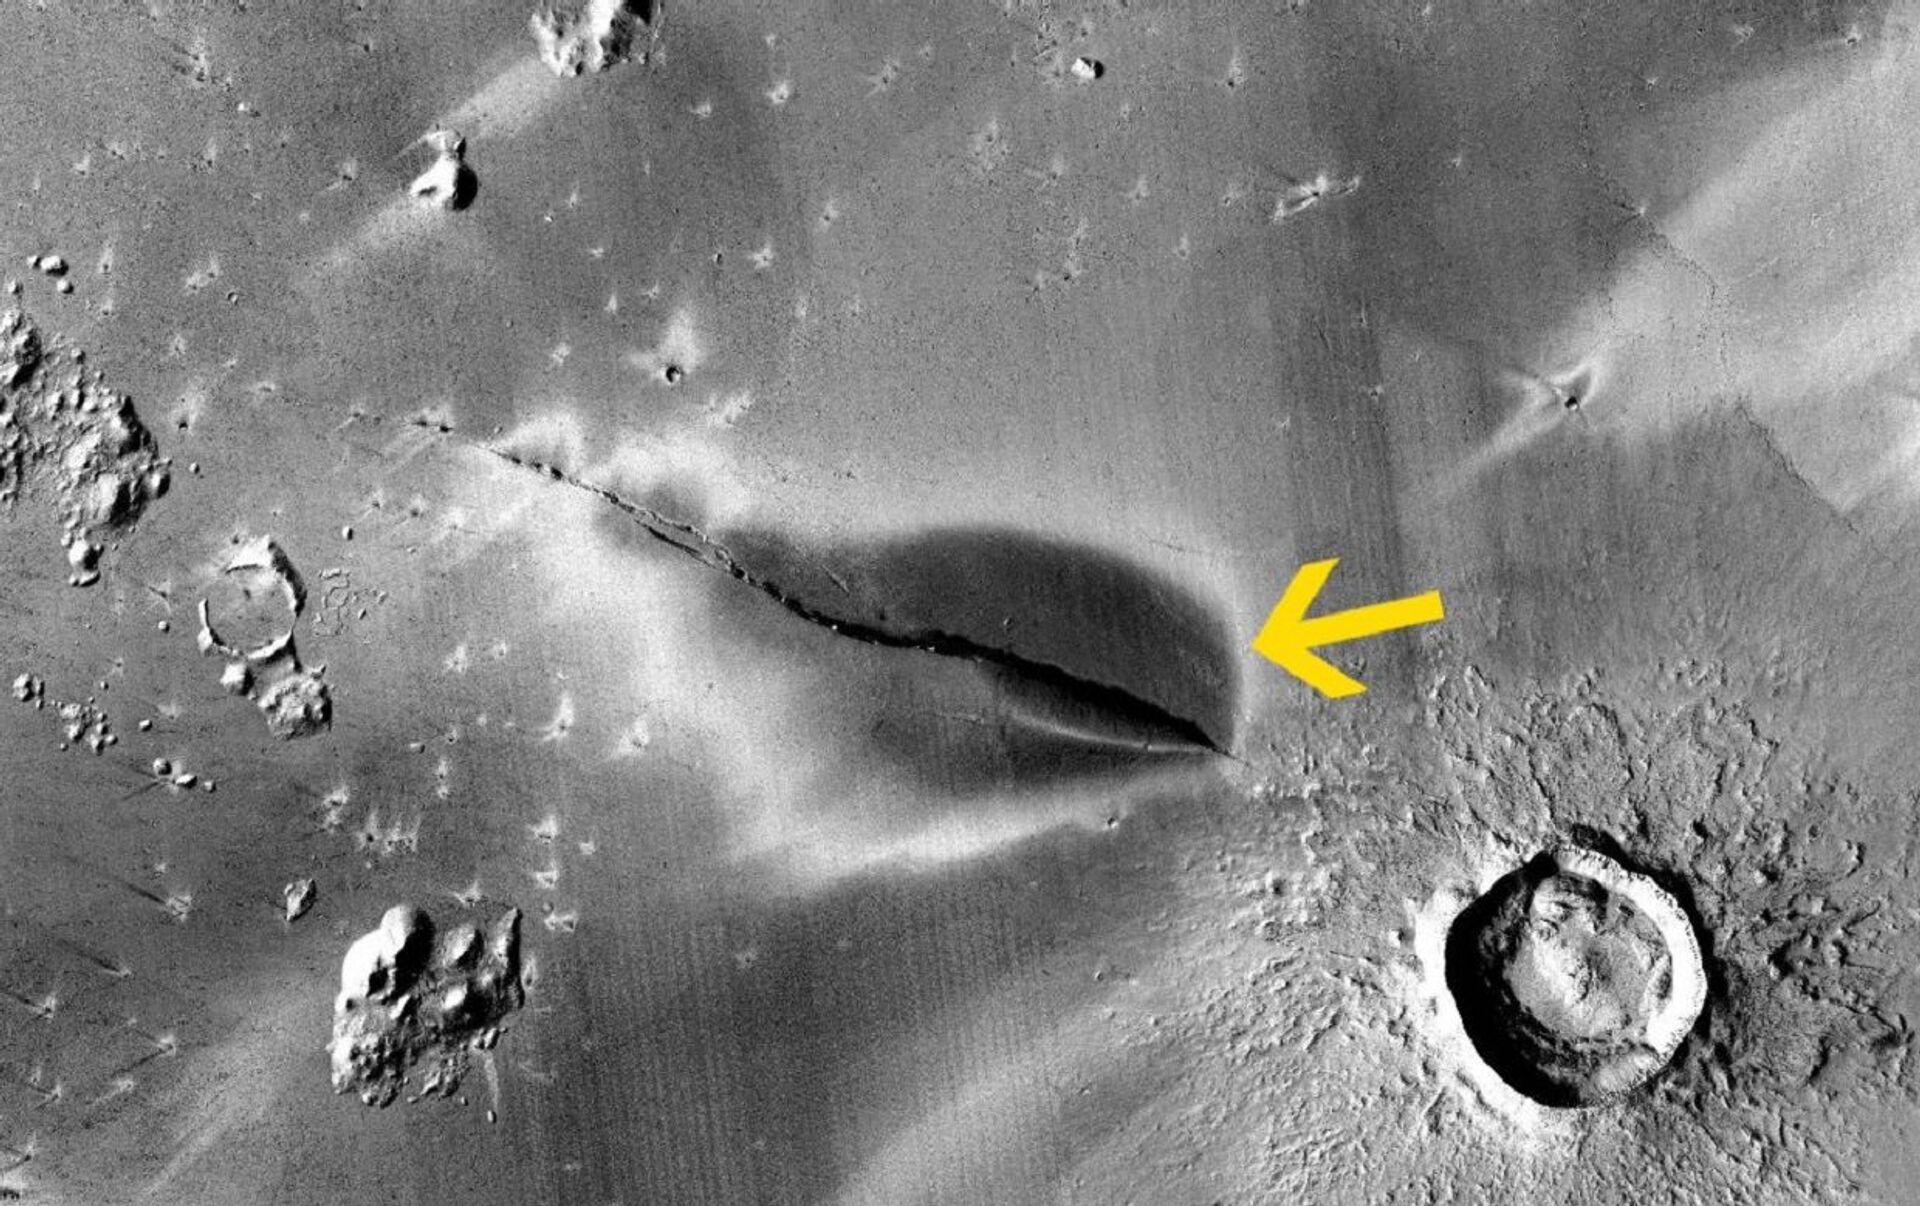 Estudo encontra evidências de vulcões ativos em Marte e aumenta chances de habitabilidade recente - Sputnik Brasil, 1920, 07.05.2021